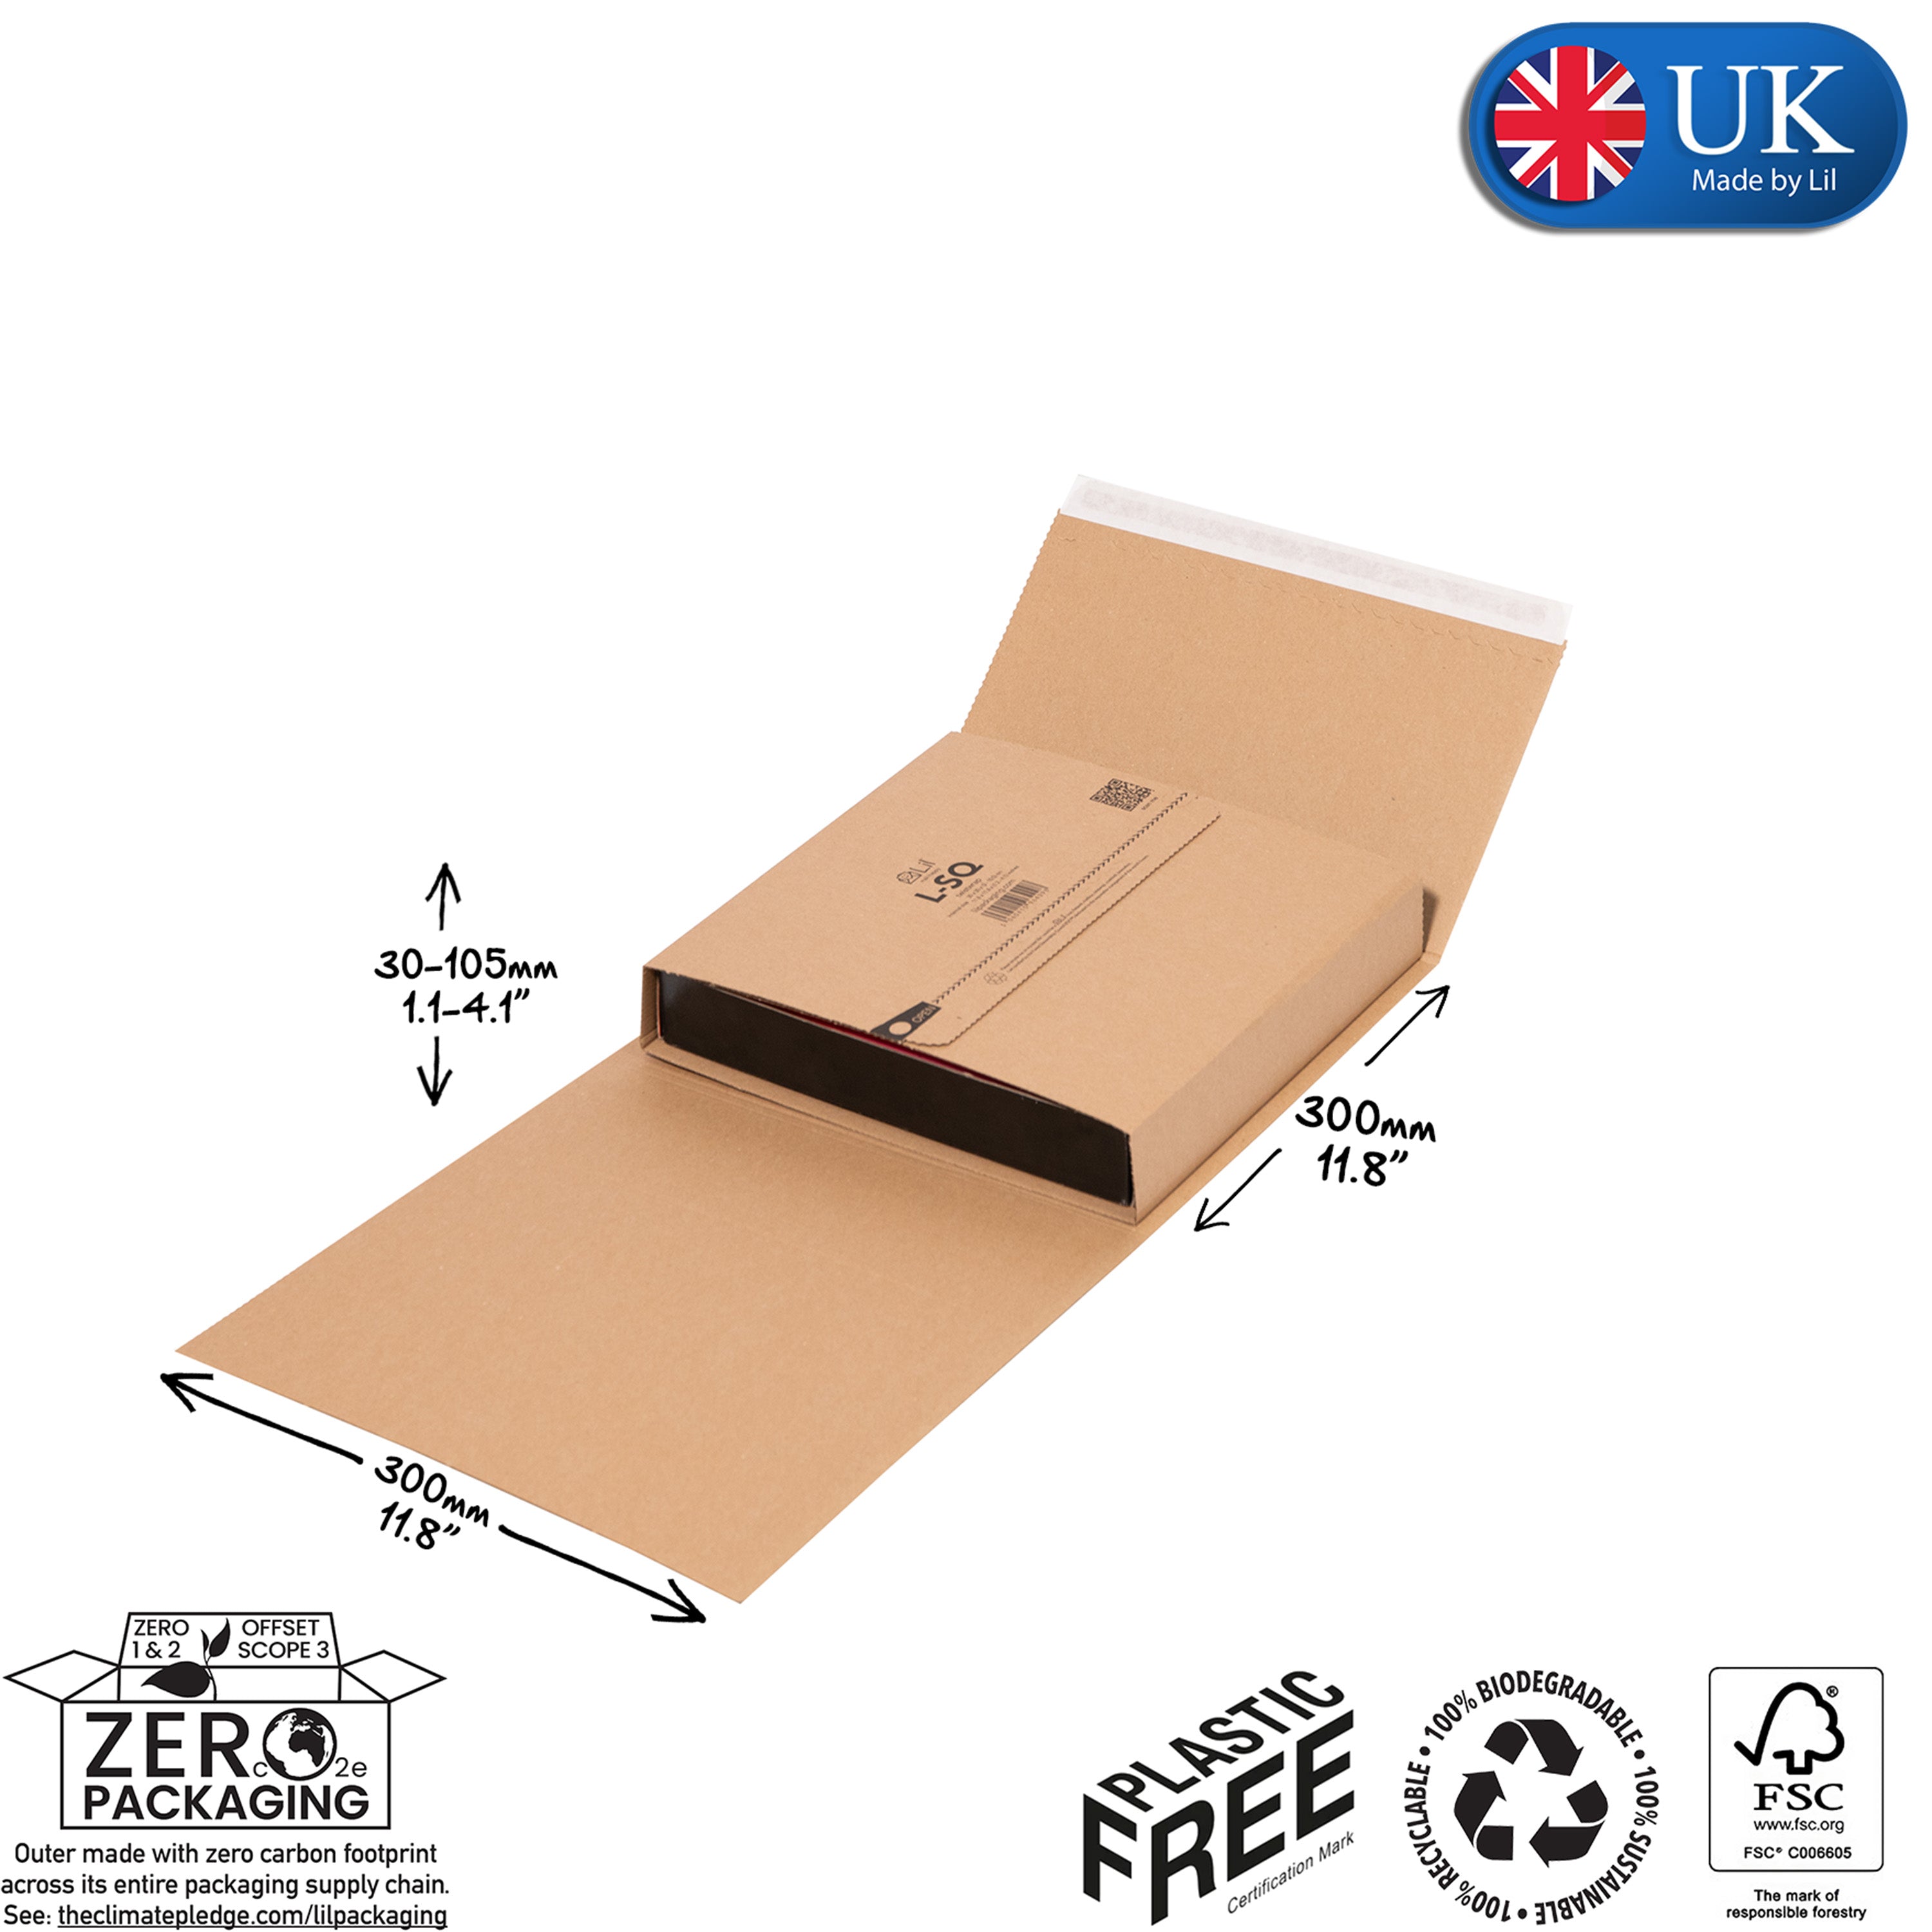 L-SQ Twistwrap Cardboard Packaging | Lil Packaging